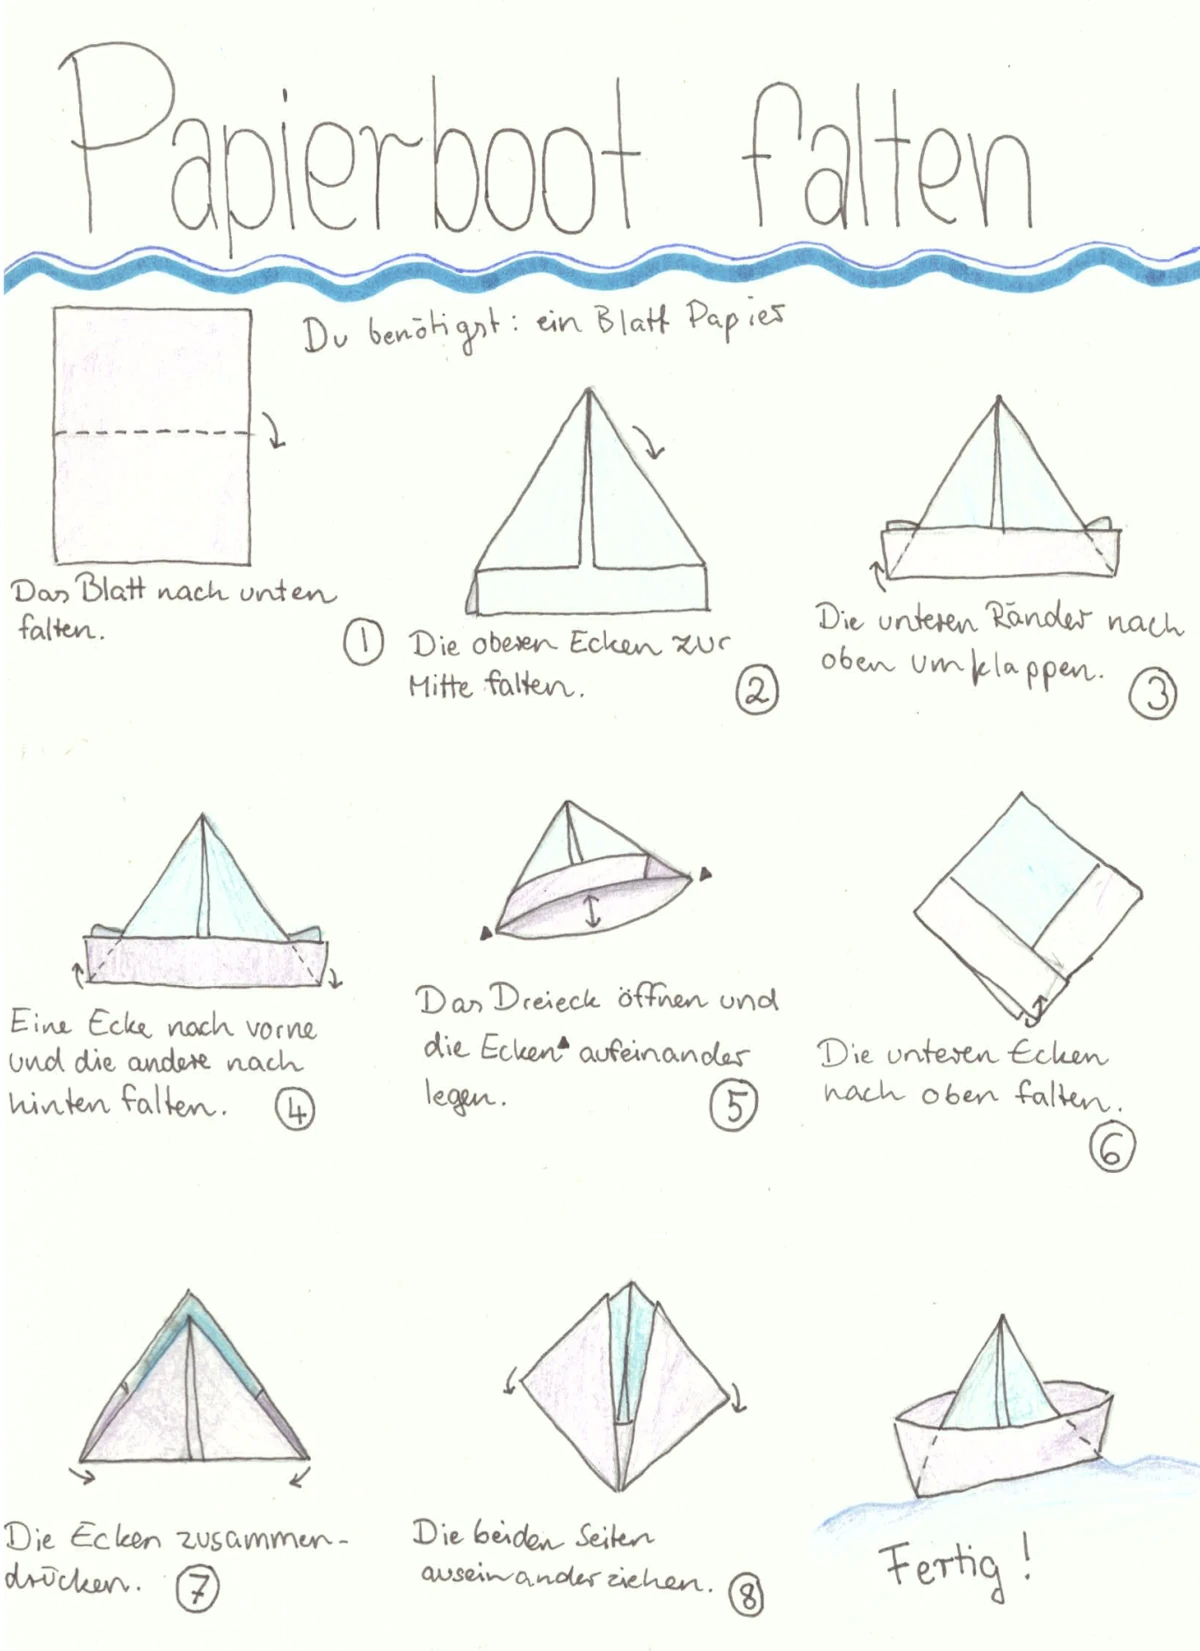 papierboot falten • Papierboot falten